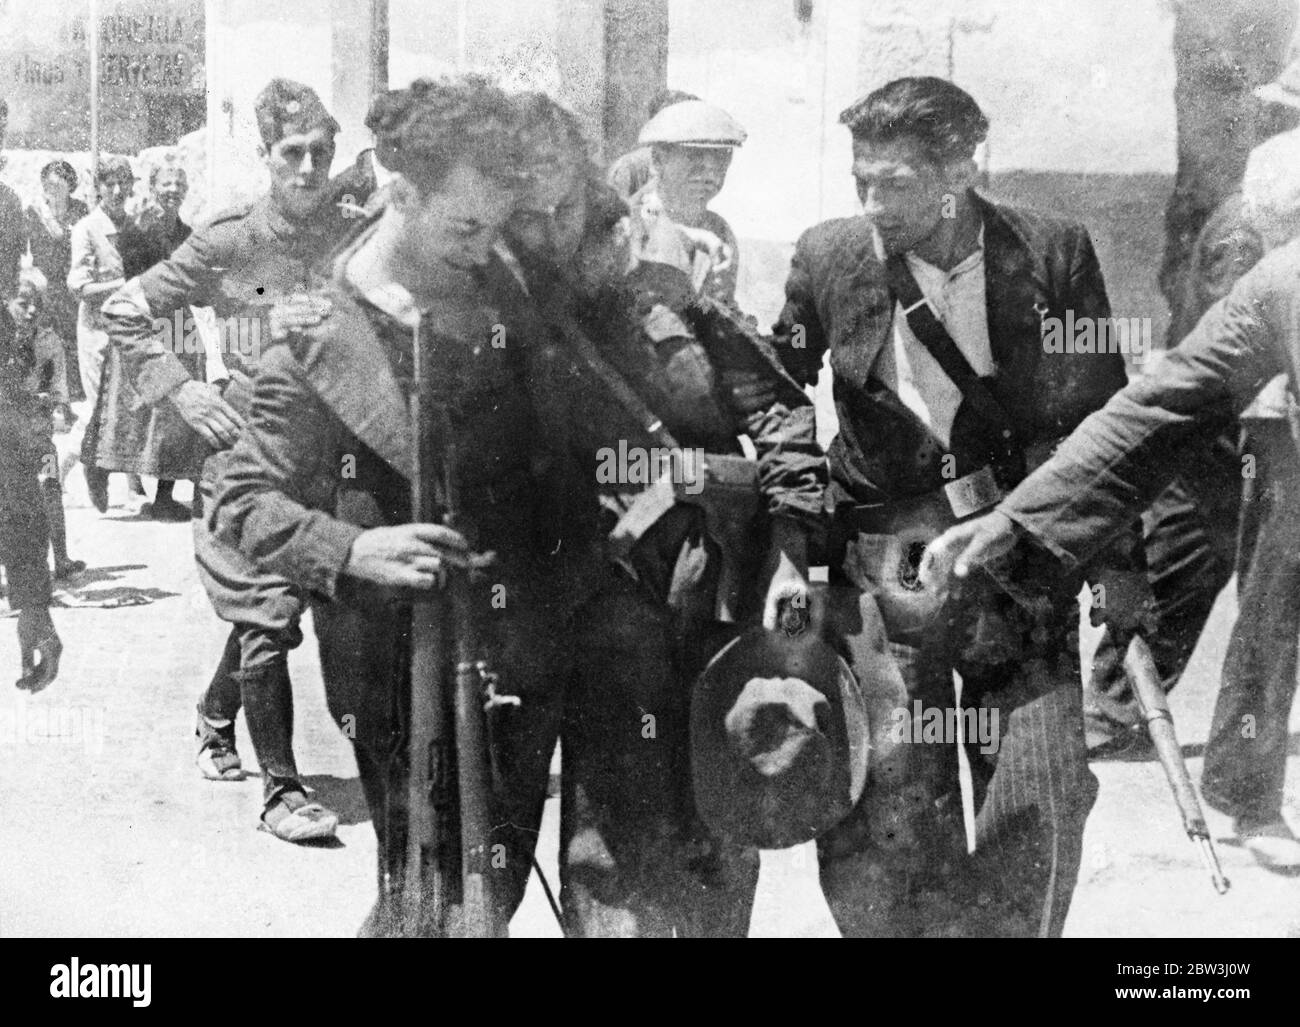 Frau in der Schlacht von Guadarrama im Spanischen Bürgerkrieg verwundet. Dieses Bild , gerade in London von Luft empfangen , zeigt eine Frau, die für die Regierung gekämpft , wird in ein Krankenhaus geholfen, nachdem sie schwer verletzt worden war in den Kämpfen in Guadarrama , wo die Regierungstruppen engagiert die Rebellen Vormarsch auf die Hauptstadt . Guadarrama, die natürliche Bergmauer im Norden von Madrid, wurde Schauplatz der heftigsten Kämpfe des spanischen Bürgerkriegs. 28 Juli 1936 Stockfoto